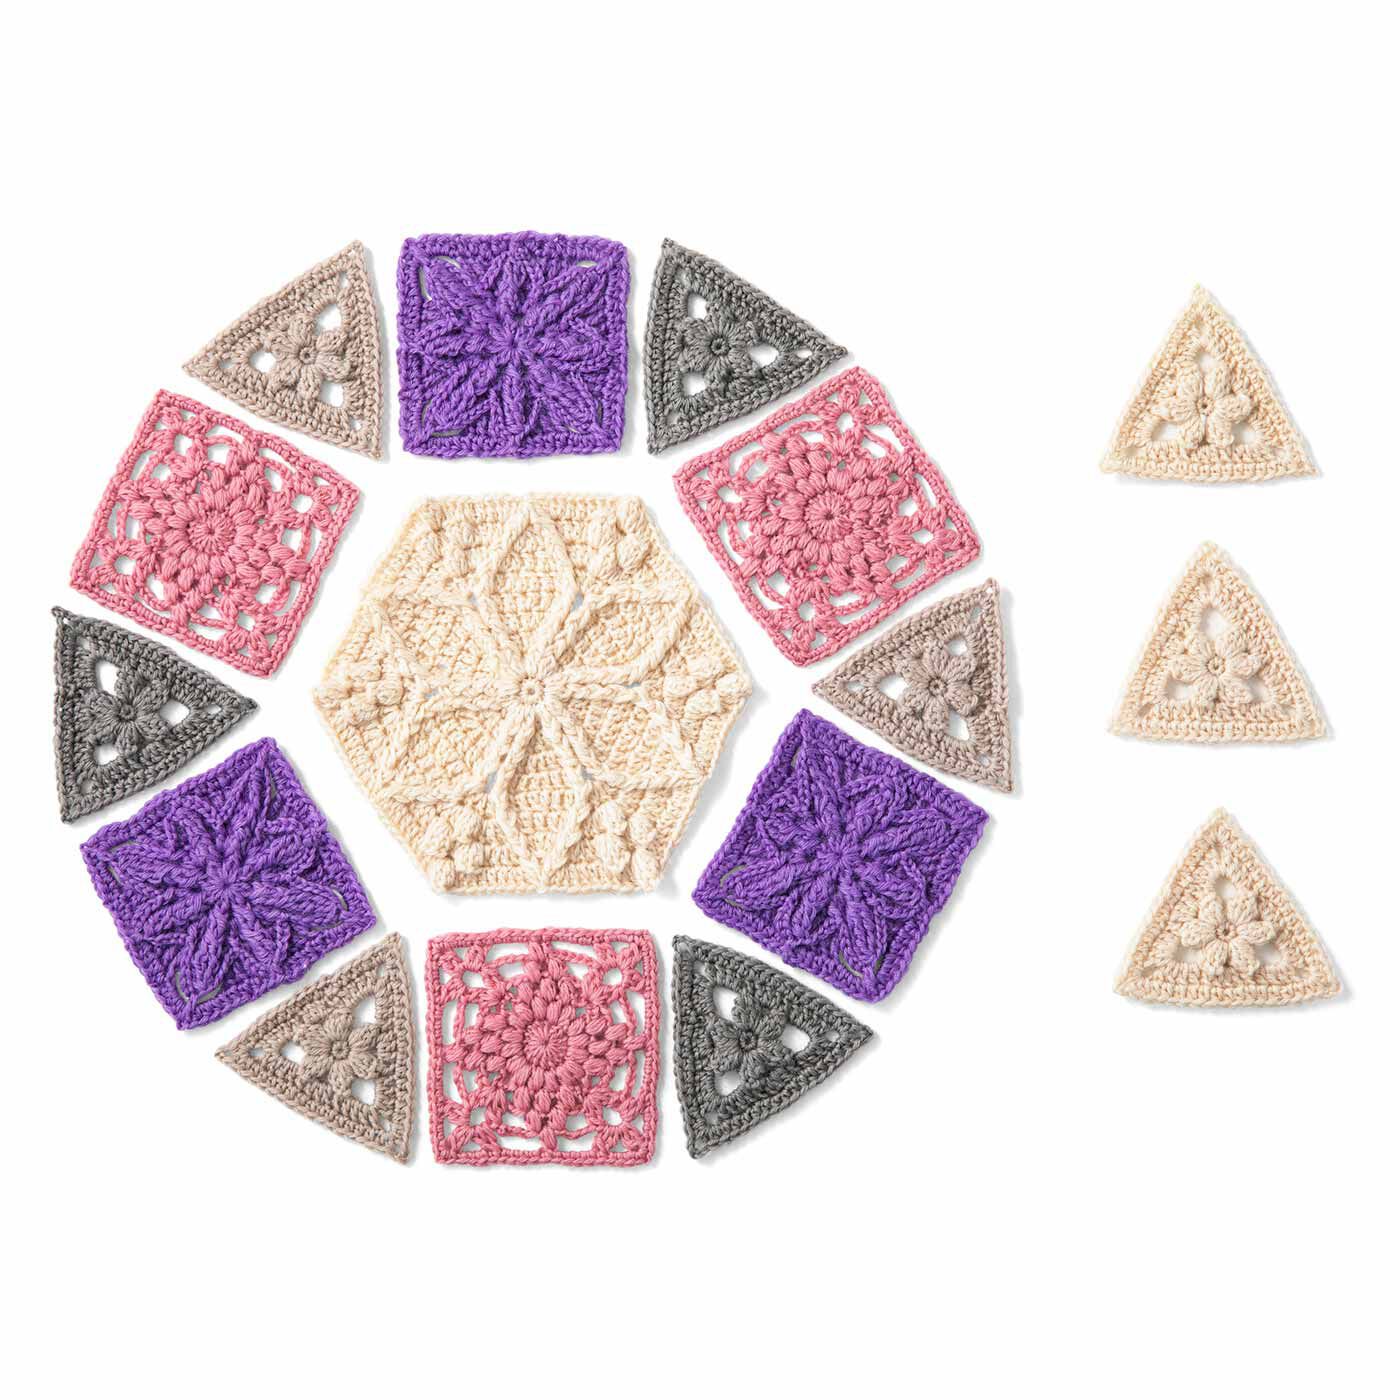 クチュリエ|多角形をつないで彩るハーモニー　かぎ針編みモチーフの会|1回のお届けで、4種類のモチーフ編みと、多角形を編んでつなぐ楽しさを満喫。